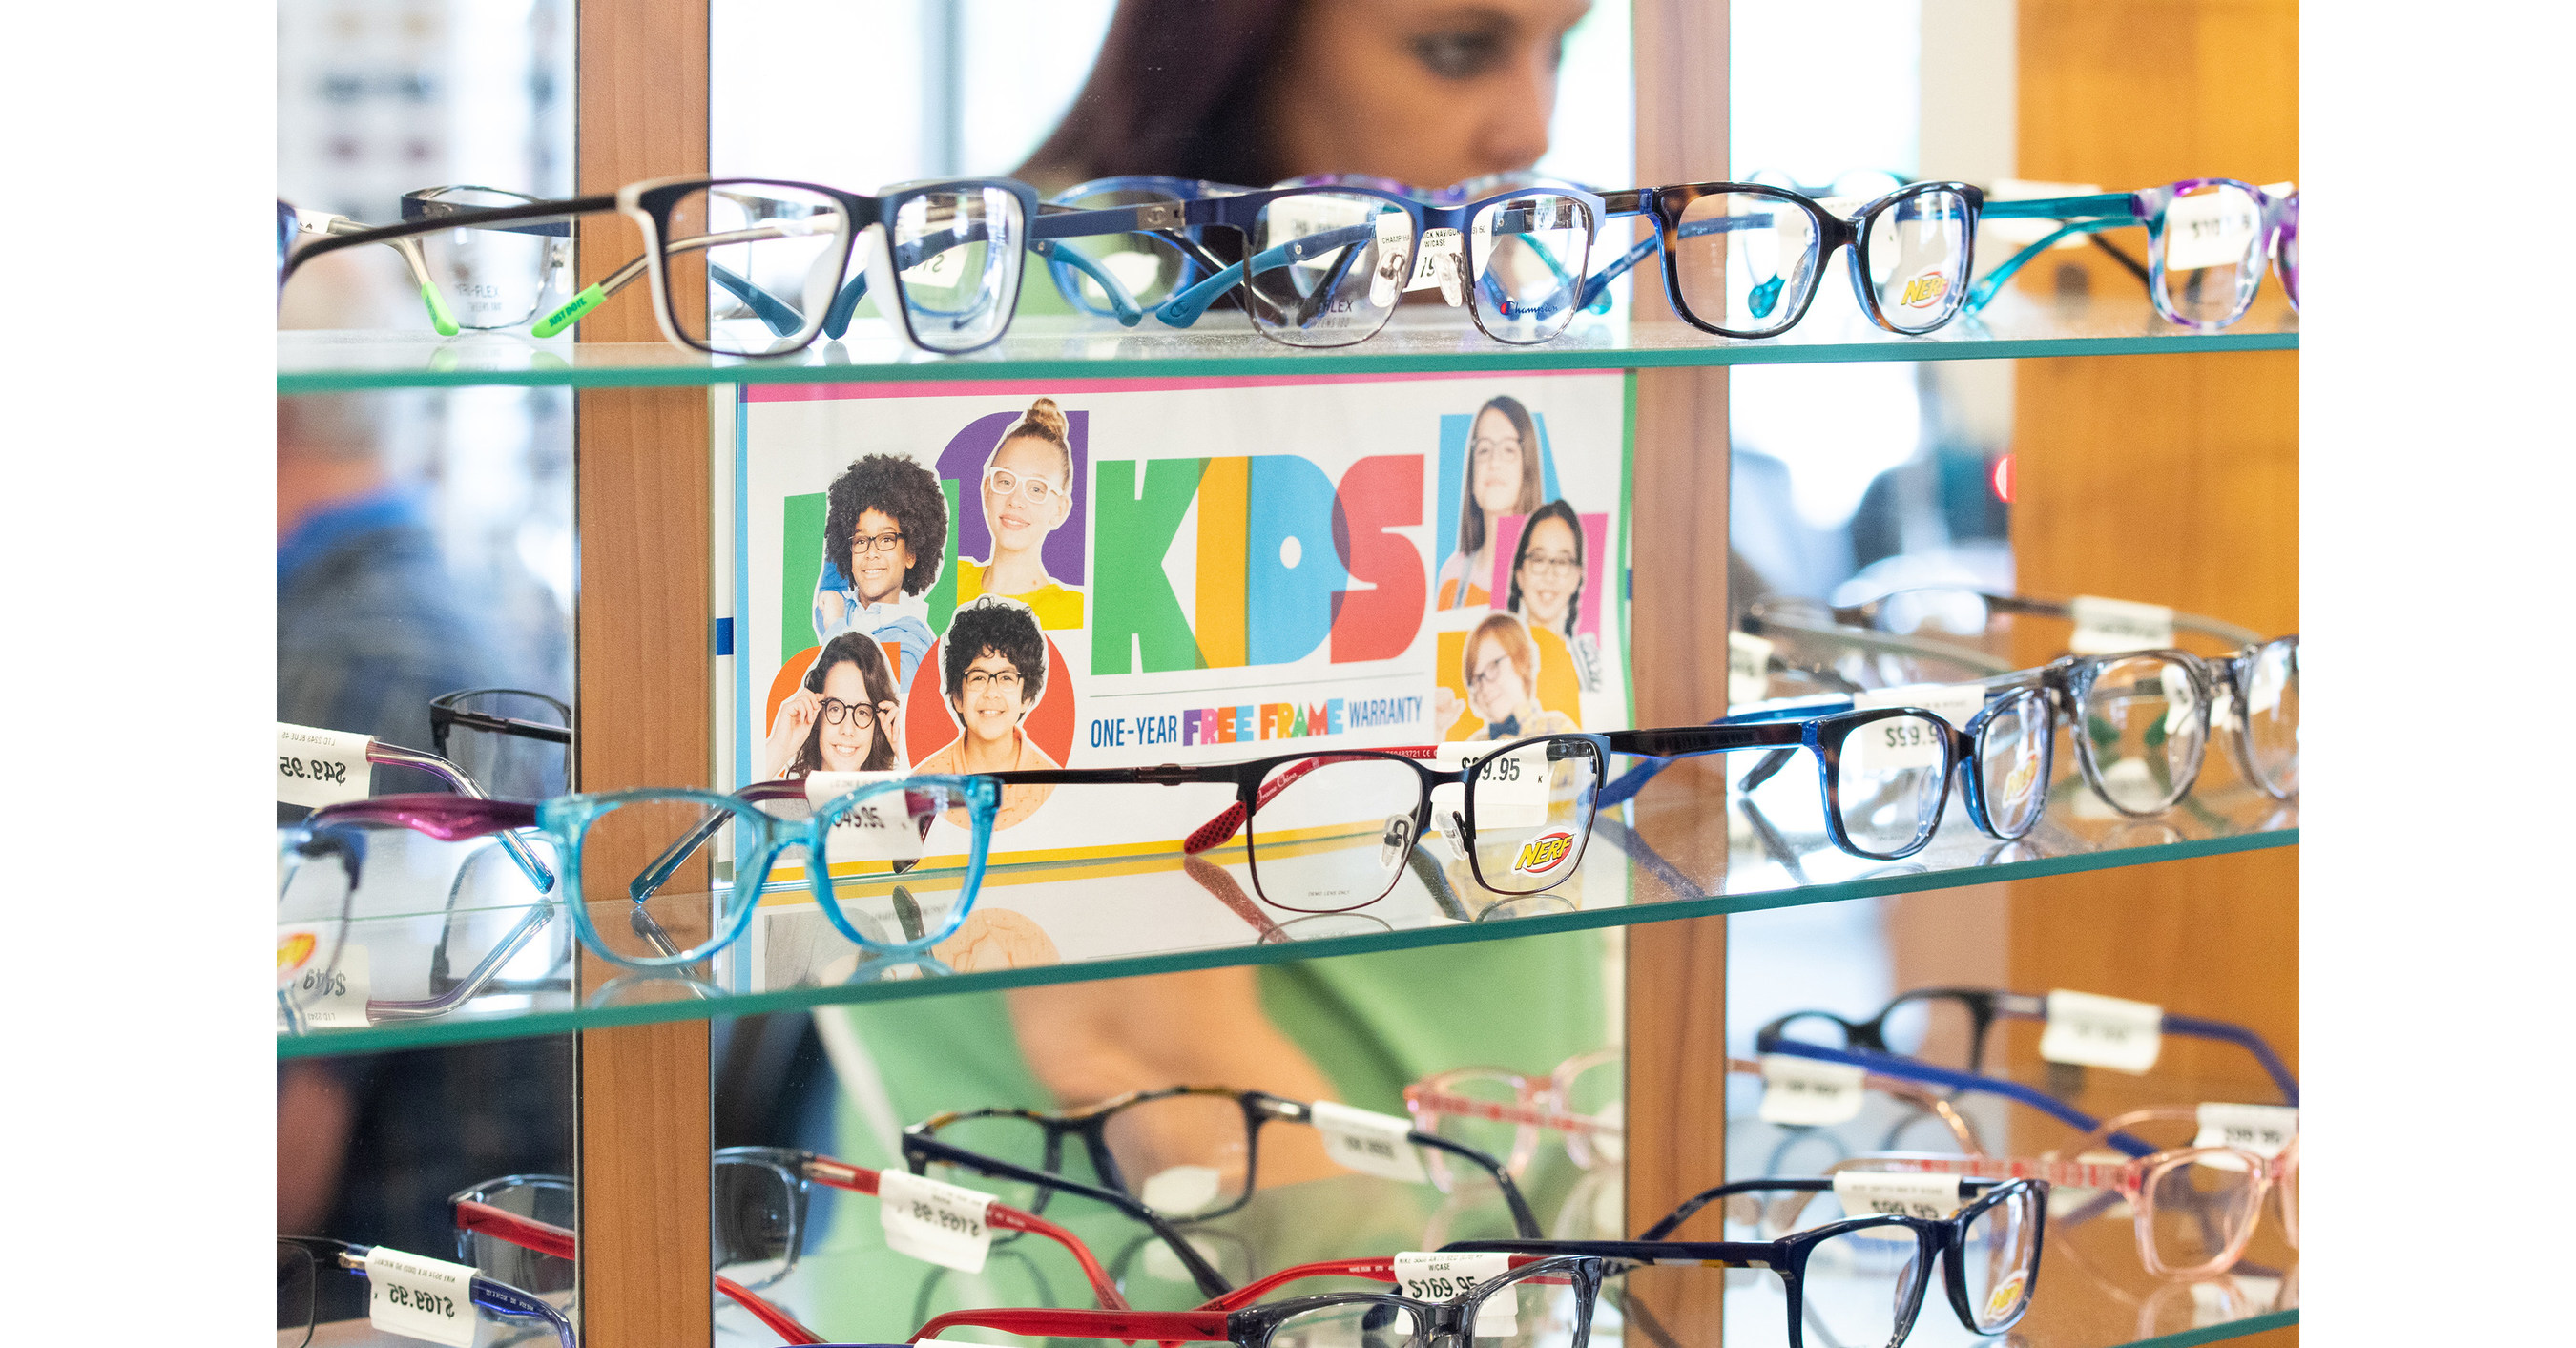 Glasses Frames For Men  Purchase Men's Prescription Eyeglasses & Designer  Frames Online - Express Glasses - Express glasses